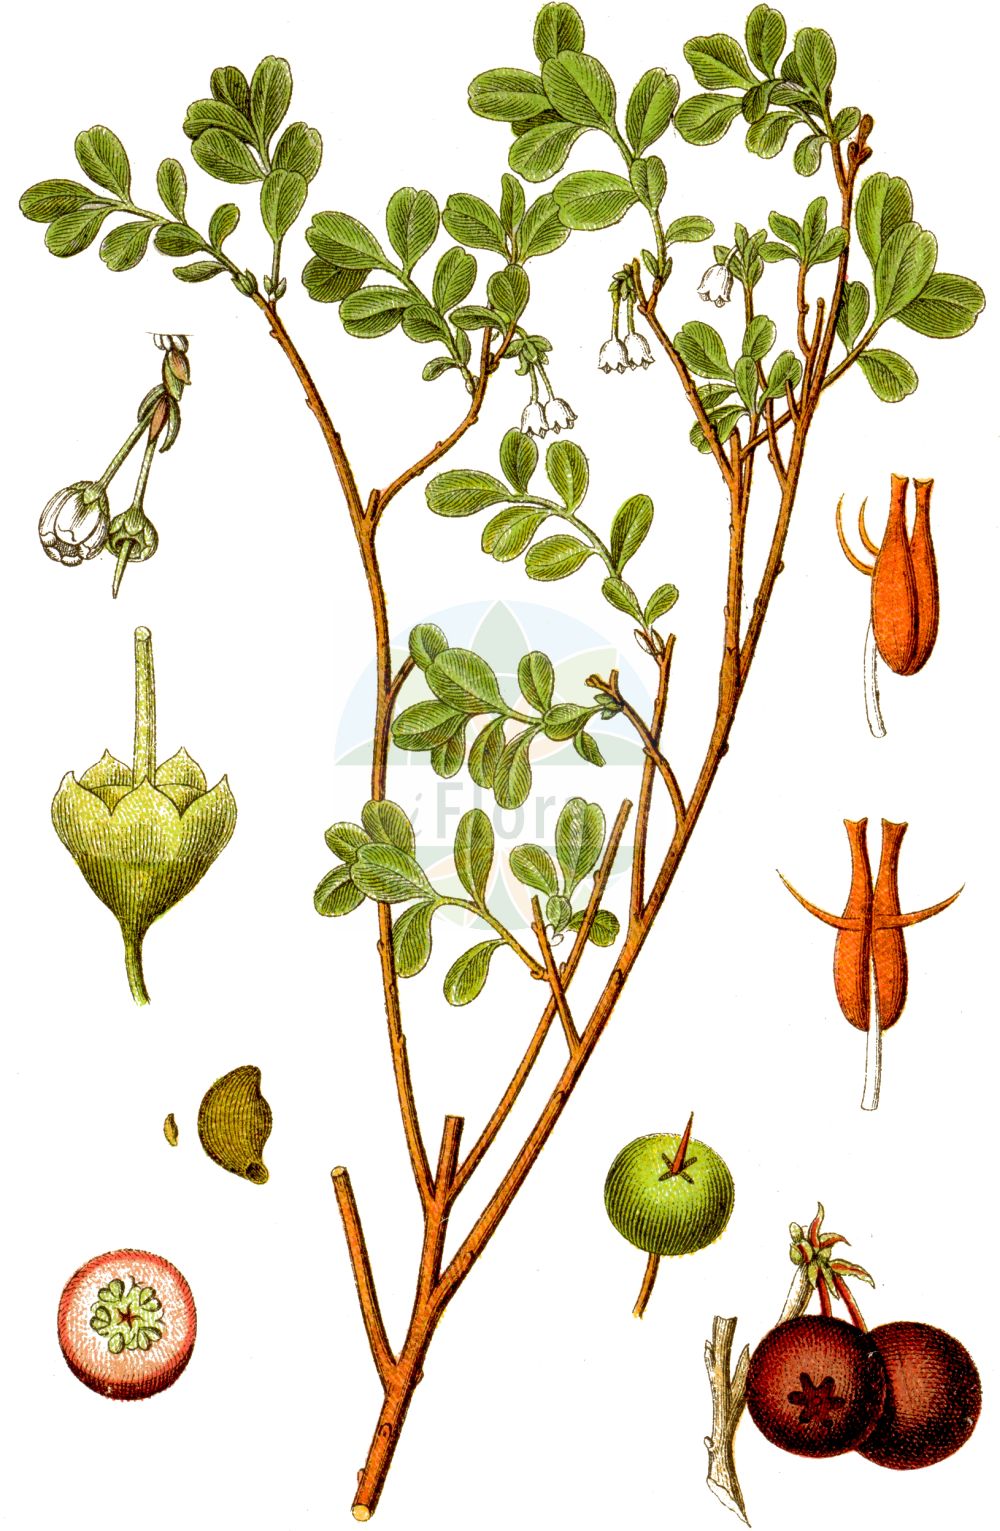 Historische Abbildung von Vaccinium uliginosum (Rauschbeere - Bog Bilberry). Das Bild zeigt Blatt, Bluete, Frucht und Same. ---- Historical Drawing of Vaccinium uliginosum (Rauschbeere - Bog Bilberry). The image is showing leaf, flower, fruit and seed.(Vaccinium uliginosum,Rauschbeere,Bog Bilberry,Vaccinium gaultherioides,Vaccinium uliginosum,Vaccinium uliginosum var. microphyllum,Rauschbeere,Gaultheria-aehnliche Rauschbeere,Gebirgs-Moorbeere,Moorbeere,Moor-Heidelbeere,Sumpf-Heidelbeere,Trunkelbeere,Bog Bilberry,Alpine Blueberry,Bog Blueberry,Bog Whortleberry,Northern Bilberry,Vaccinium,Heidelbeere,Blueberry,Ericaceae,Heidekrautgewächse,Heath family,Blatt,Bluete,Frucht,Same,leaf,flower,fruit,seed,Sturm (1796f))